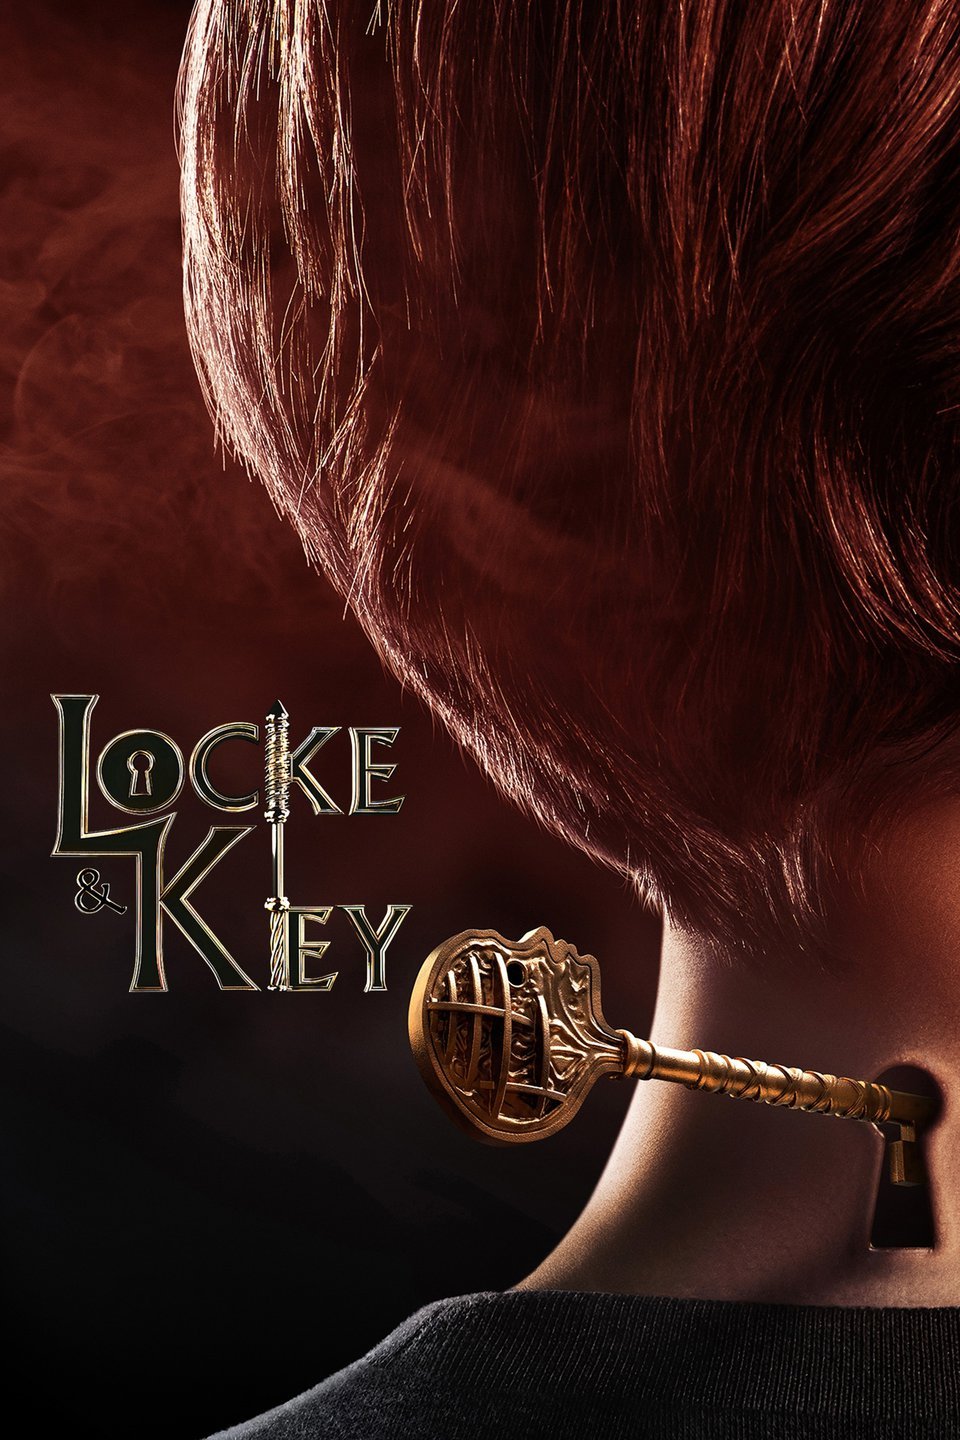 Locke & Key 1.Sezon izle